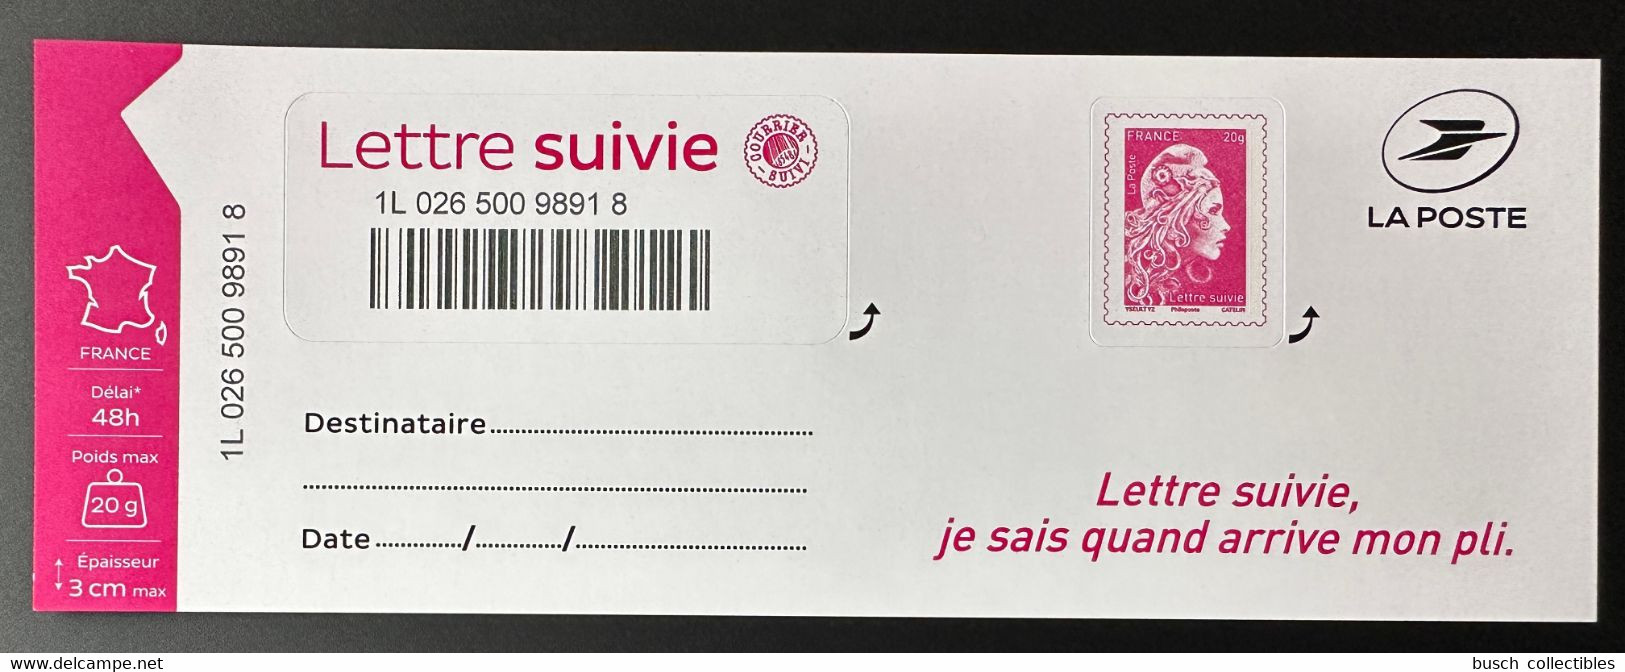 France 2019 - Lettre Suivie Adhésif LS7 LS 7 1217a 1656BA Marianne L'Engagée Suivi Liasse Complète - Unused Stamps